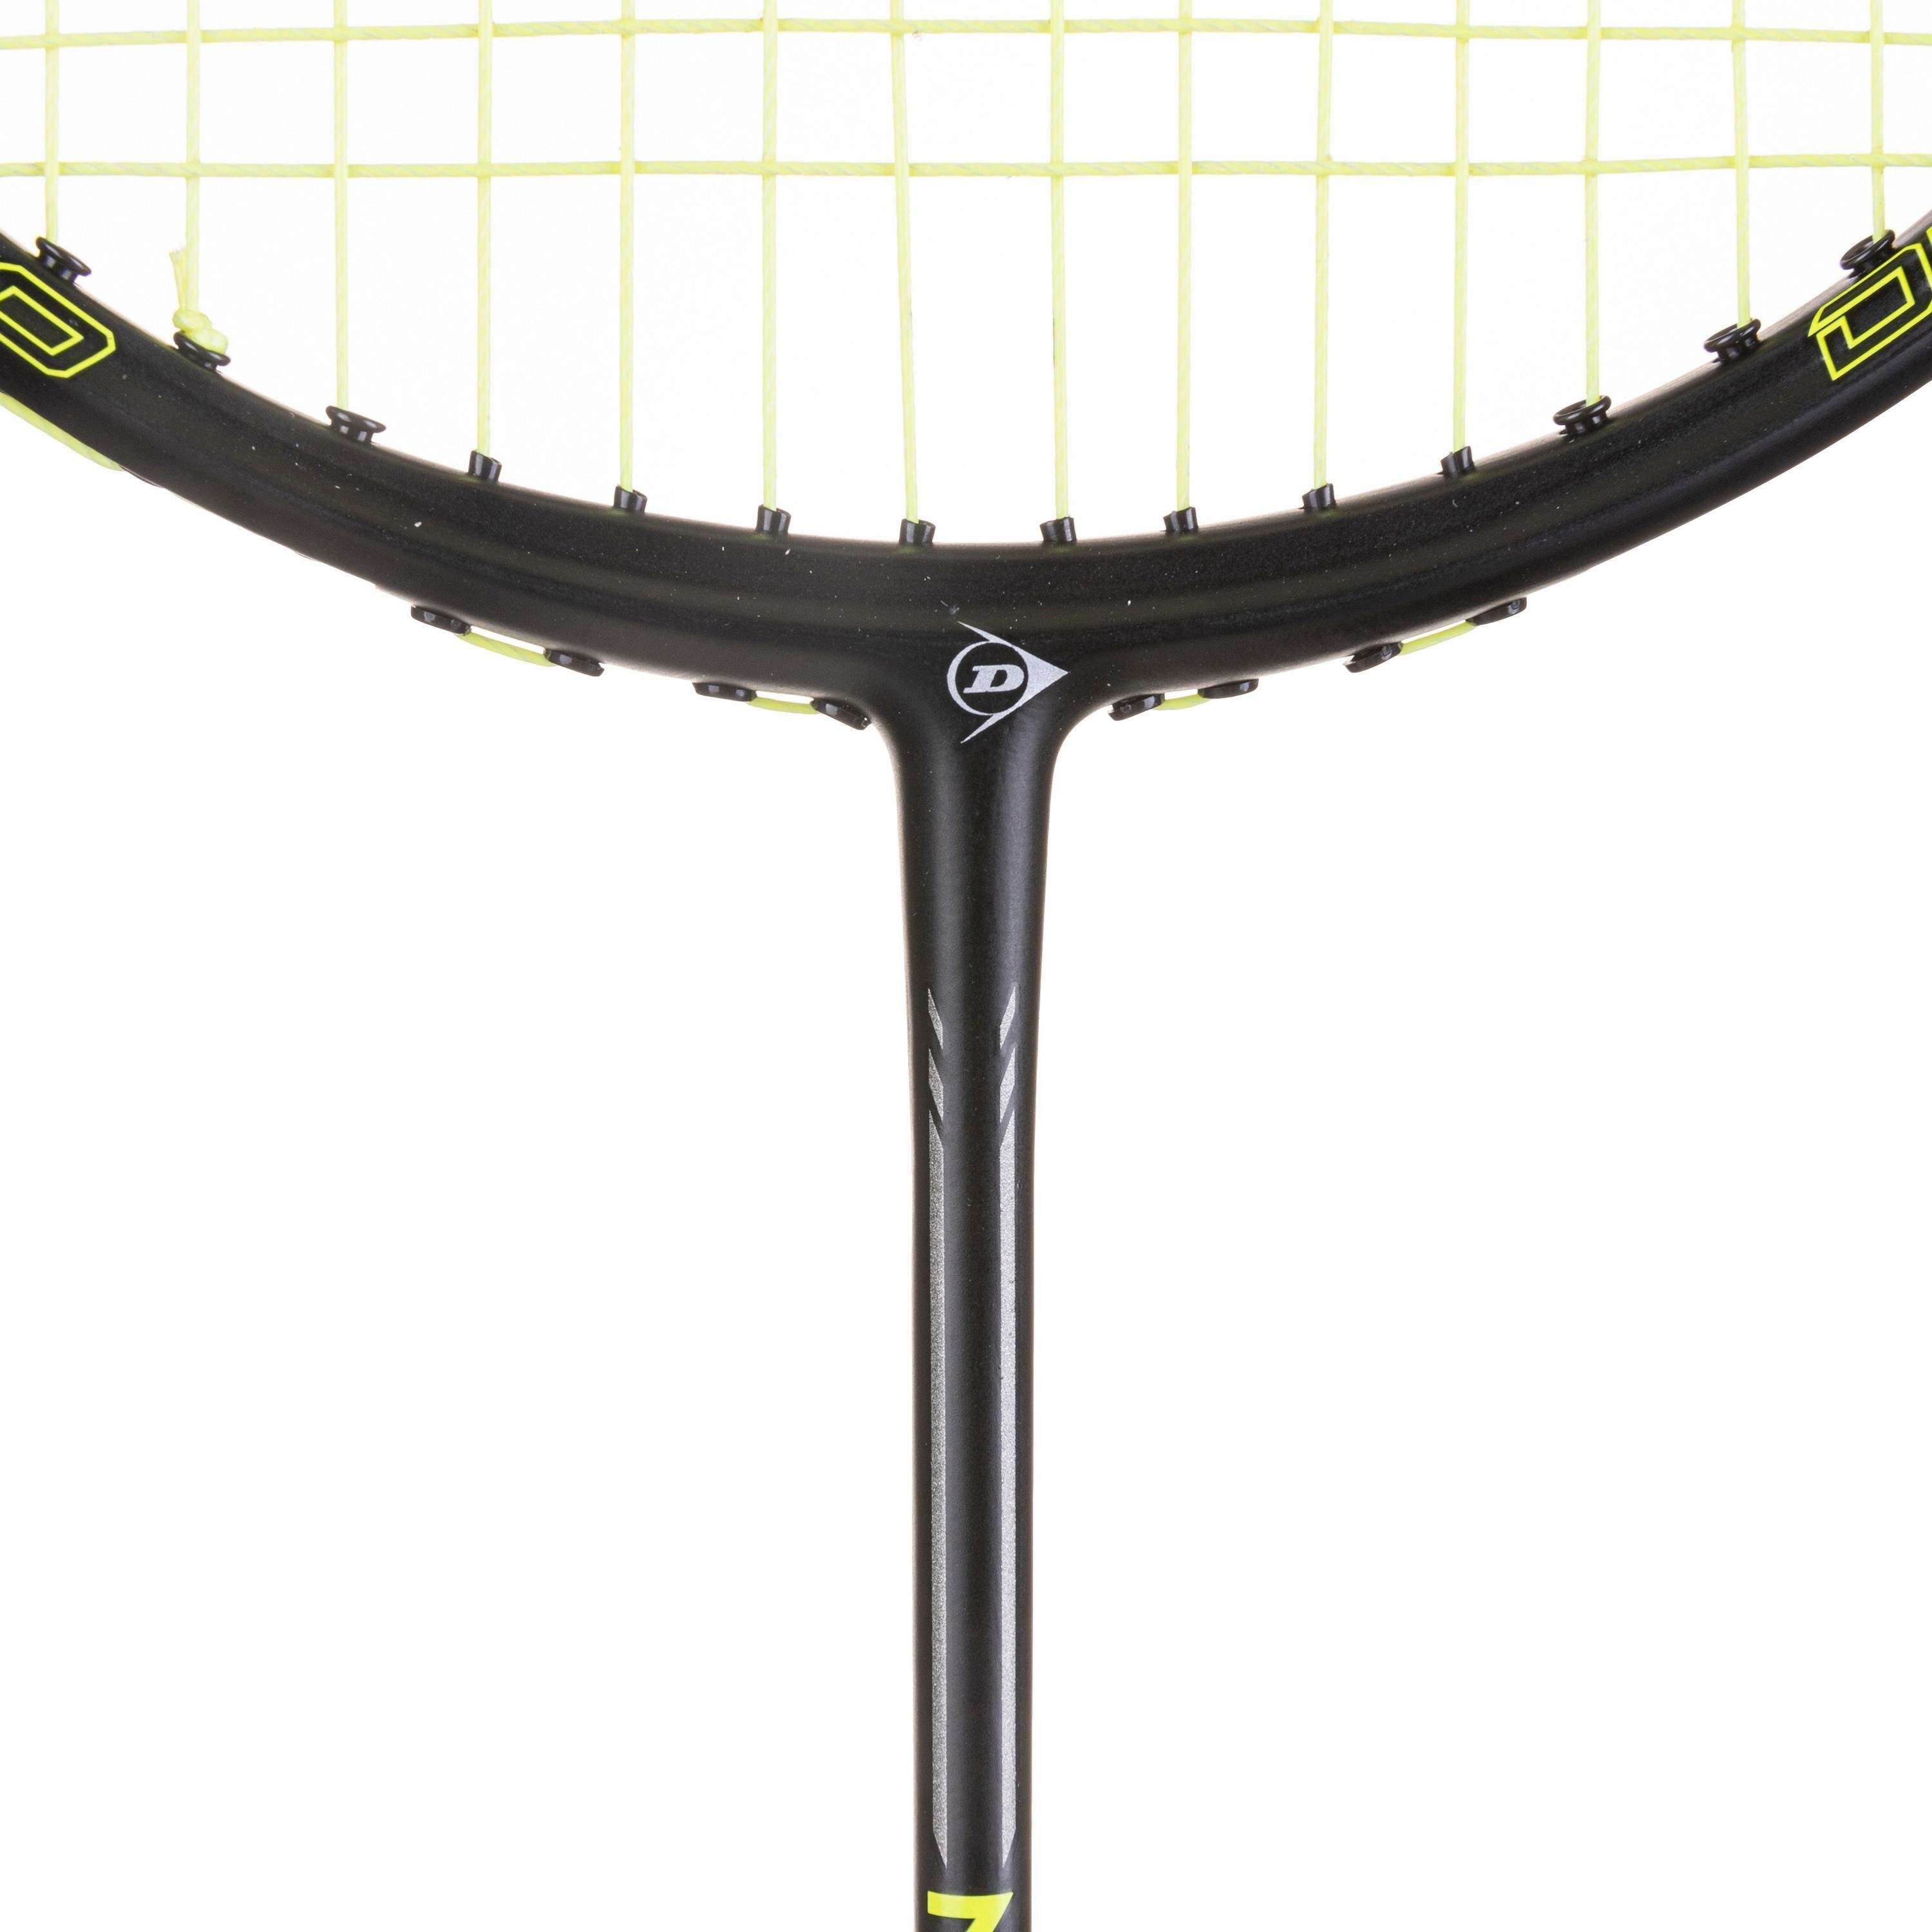 Dunlop Badmintonschläger NITRO STAR FS1000